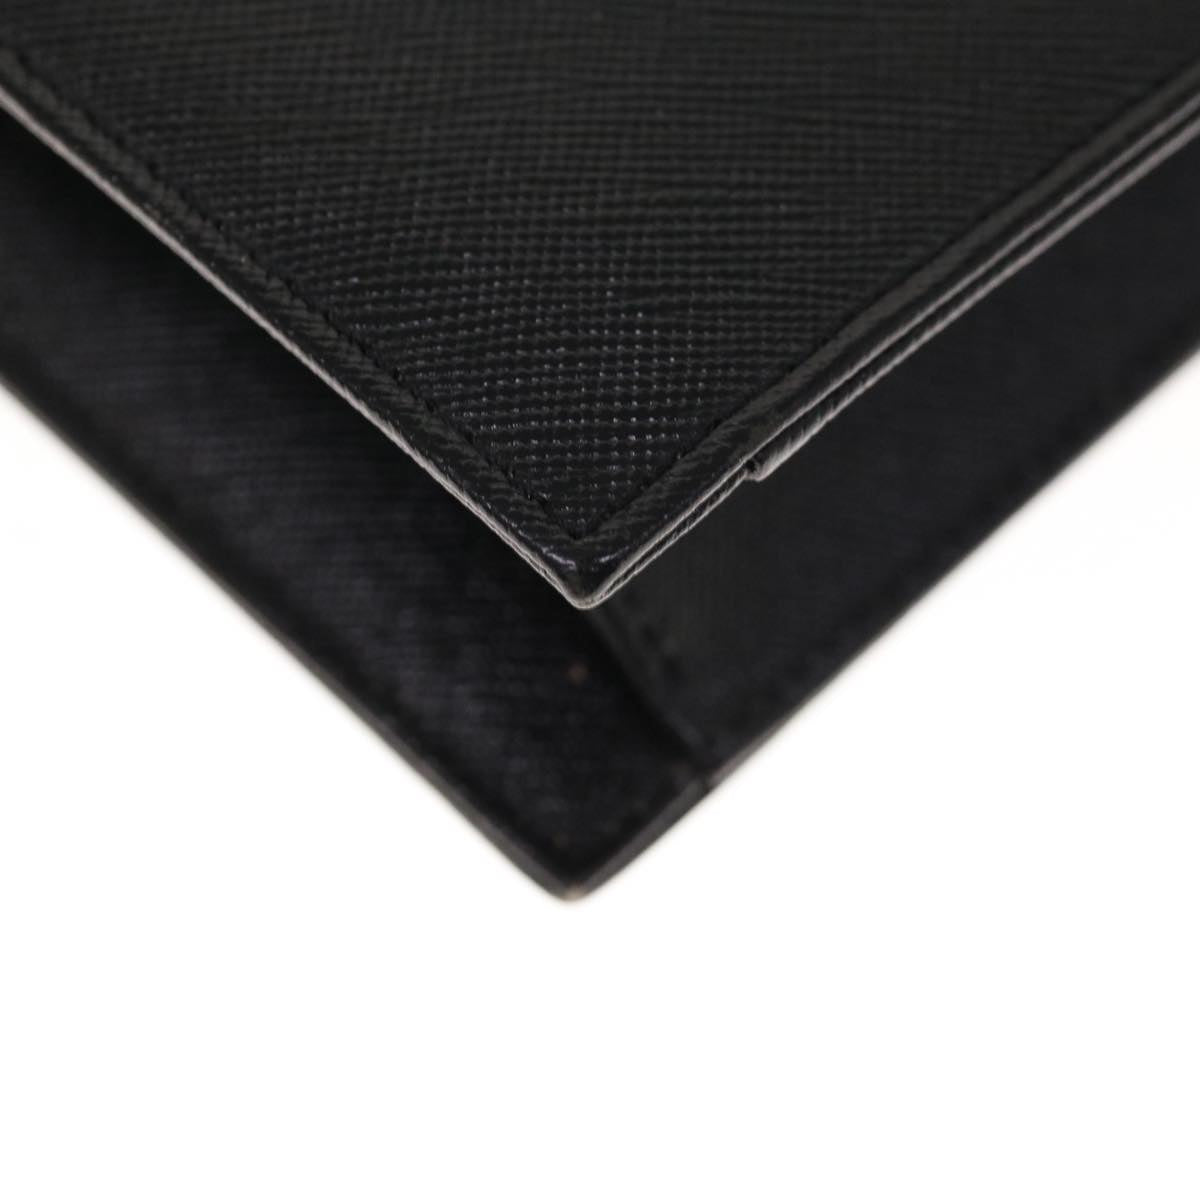 SAINT LAURENT Clutch Bag Leather Black Auth yk10564